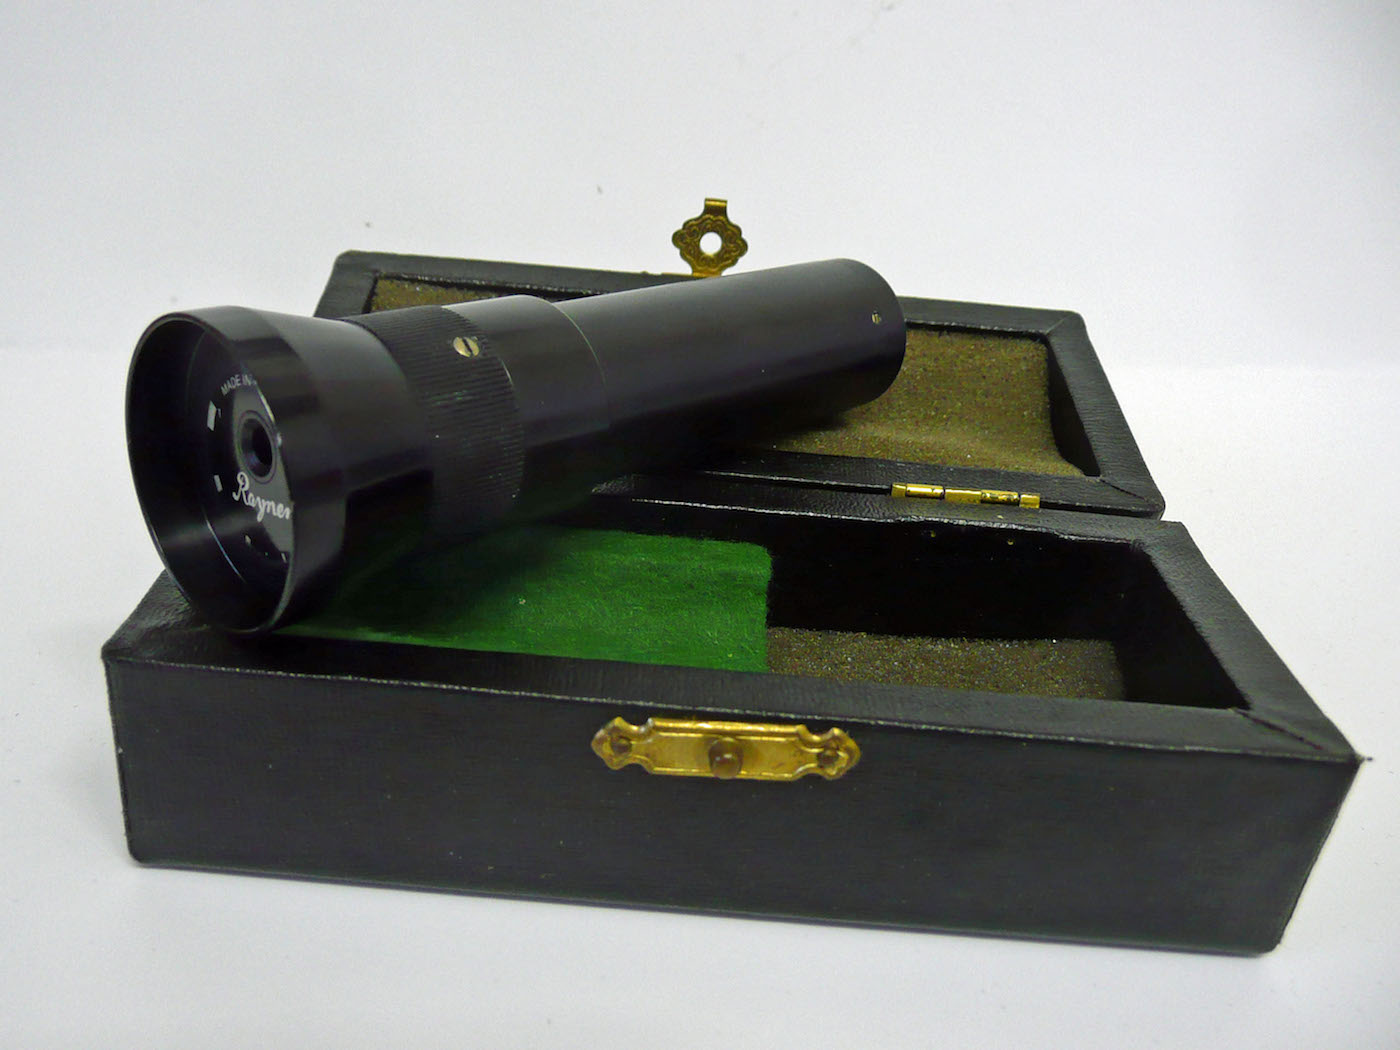 Hand spectroscope - Rayner diffraction grating spectroscope